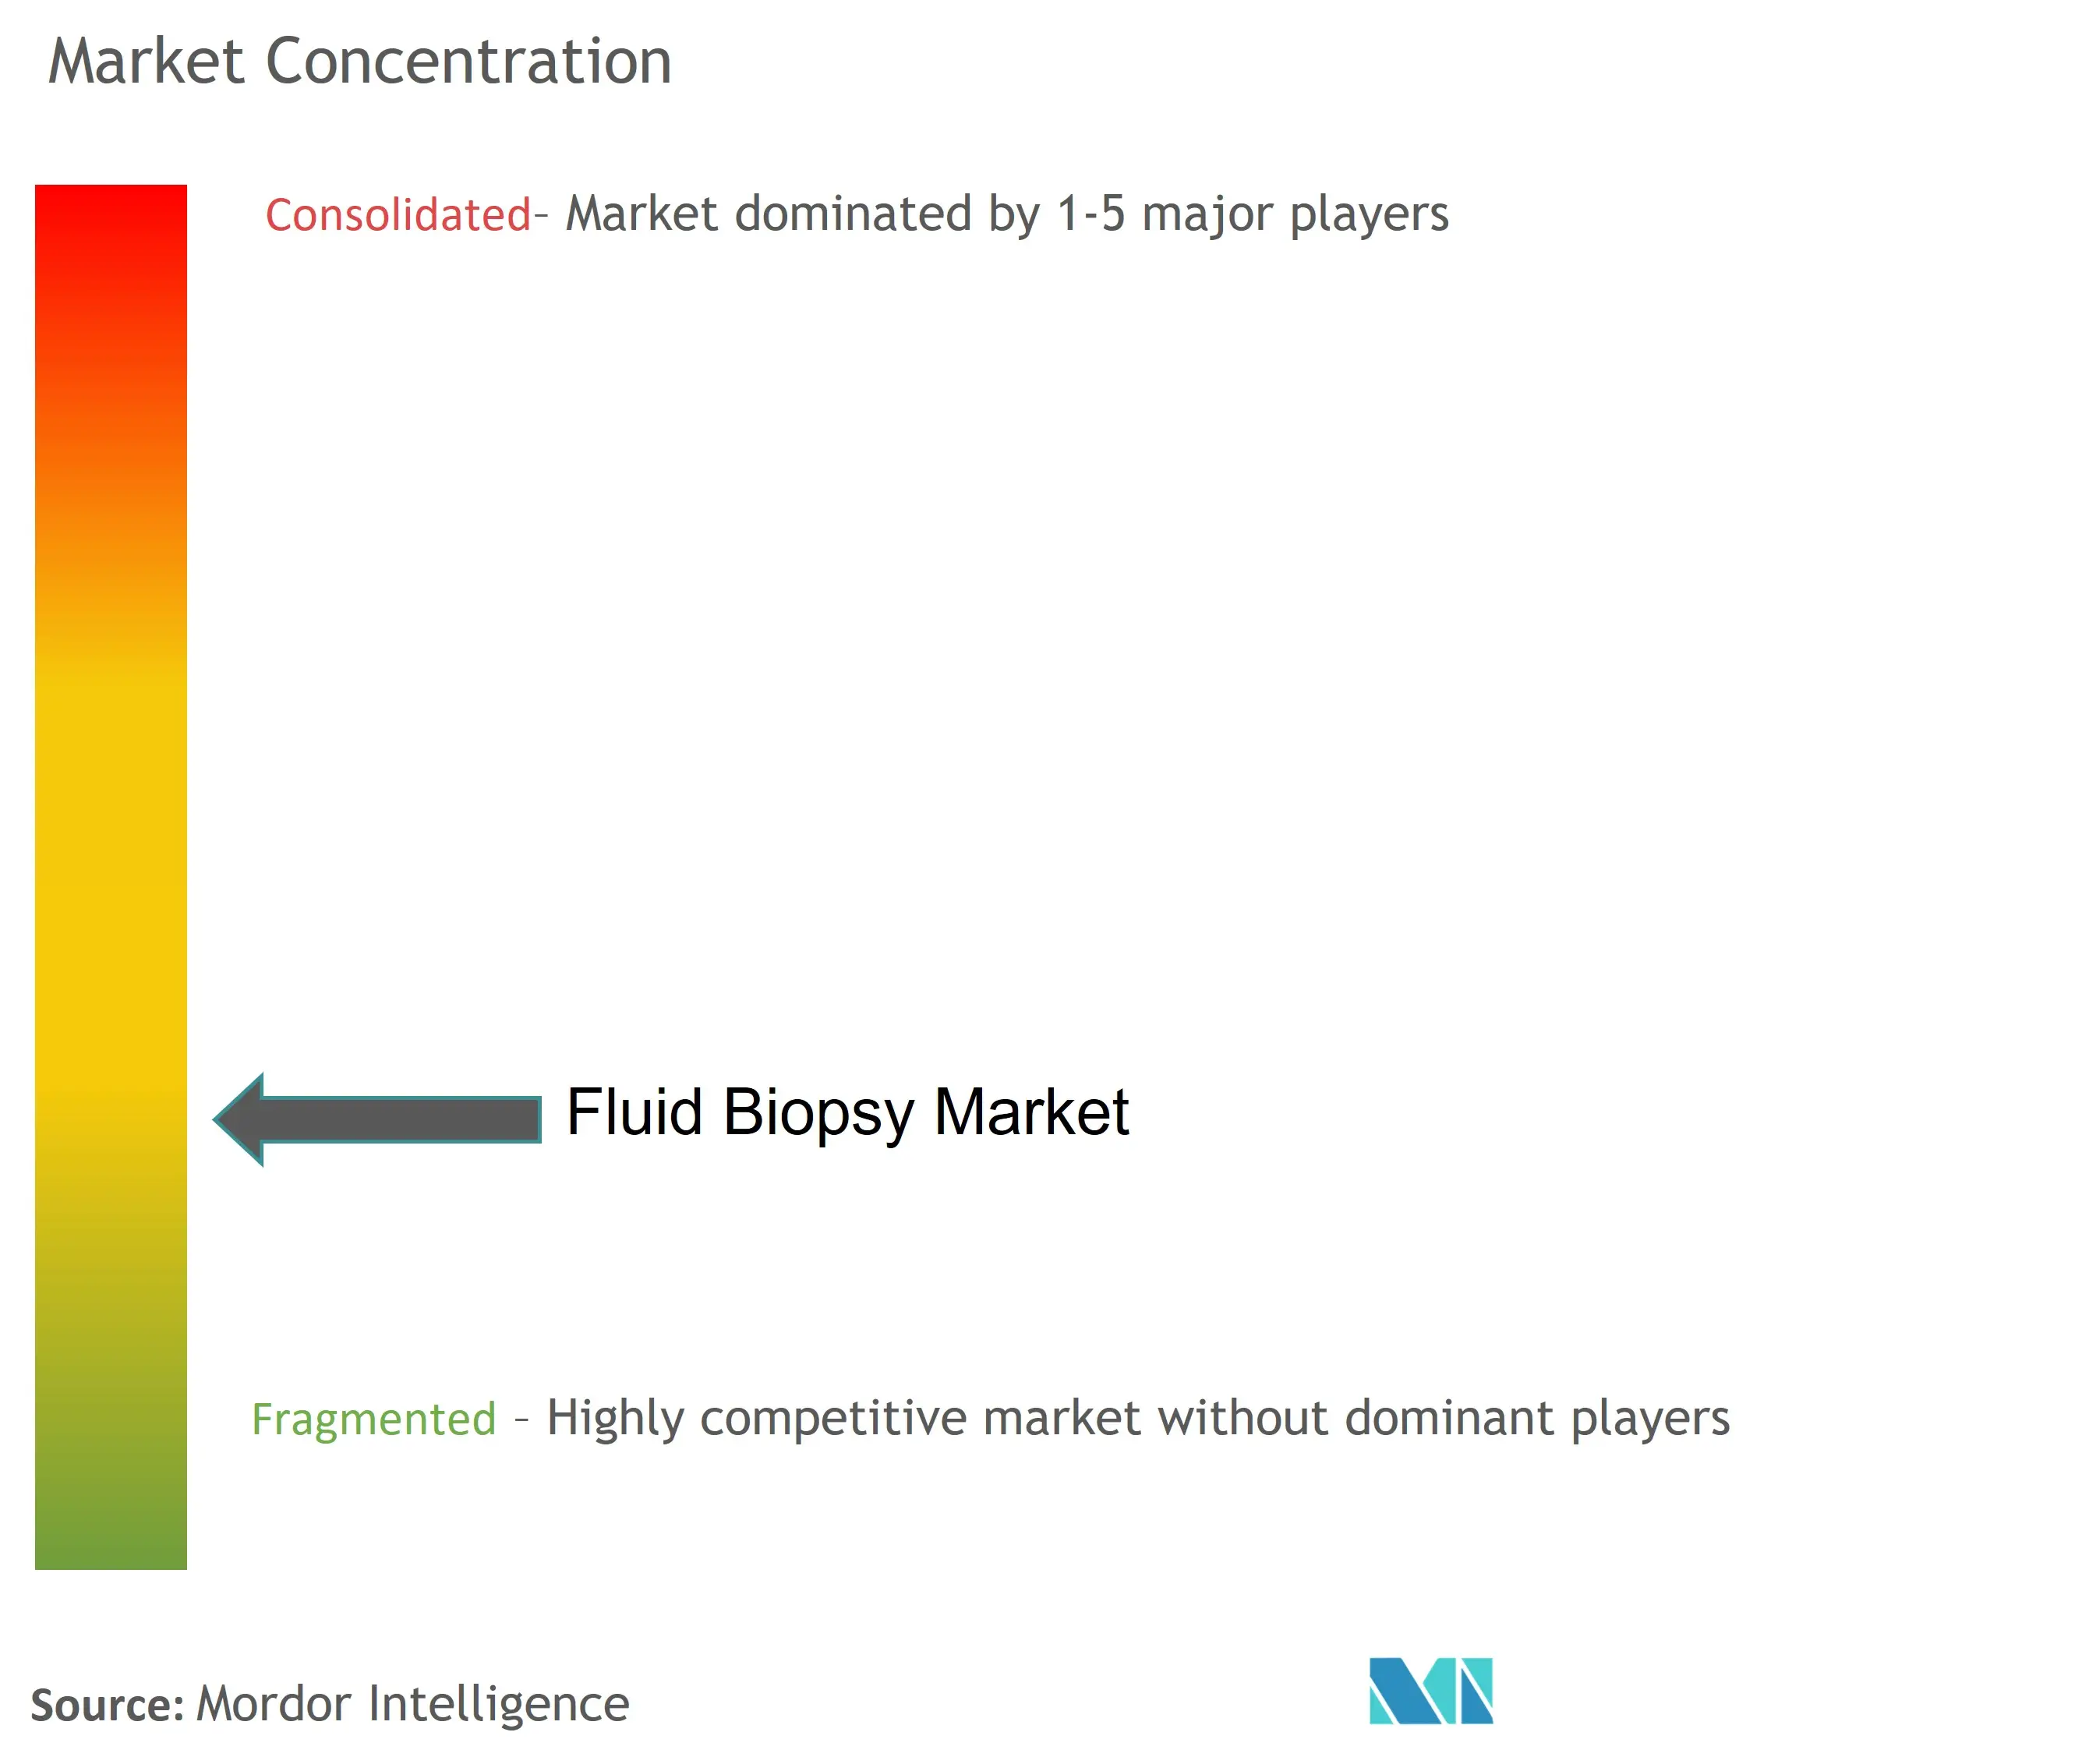 Fluid Biopsy Market Concentration